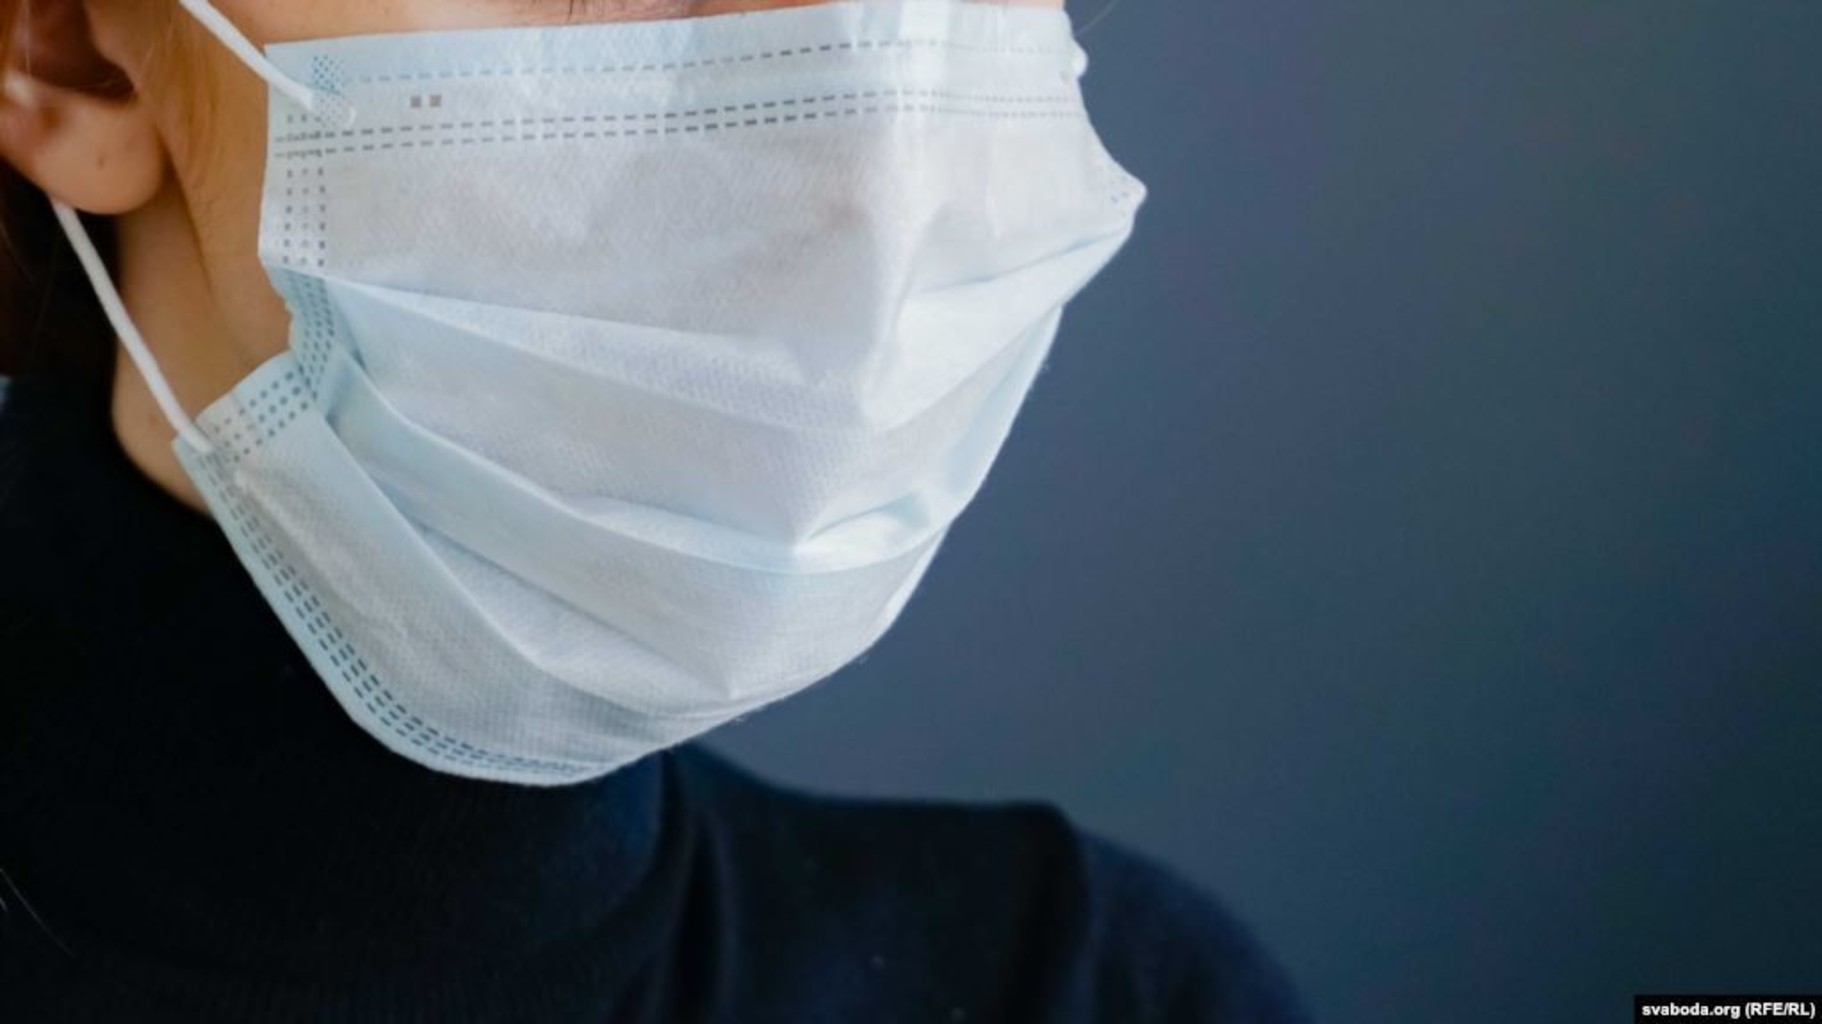 Защита медицинских масок. Маска медицинская. Медицинская маска в руке. Маска защитная медицинская. Медицинские маски от коронавируса.